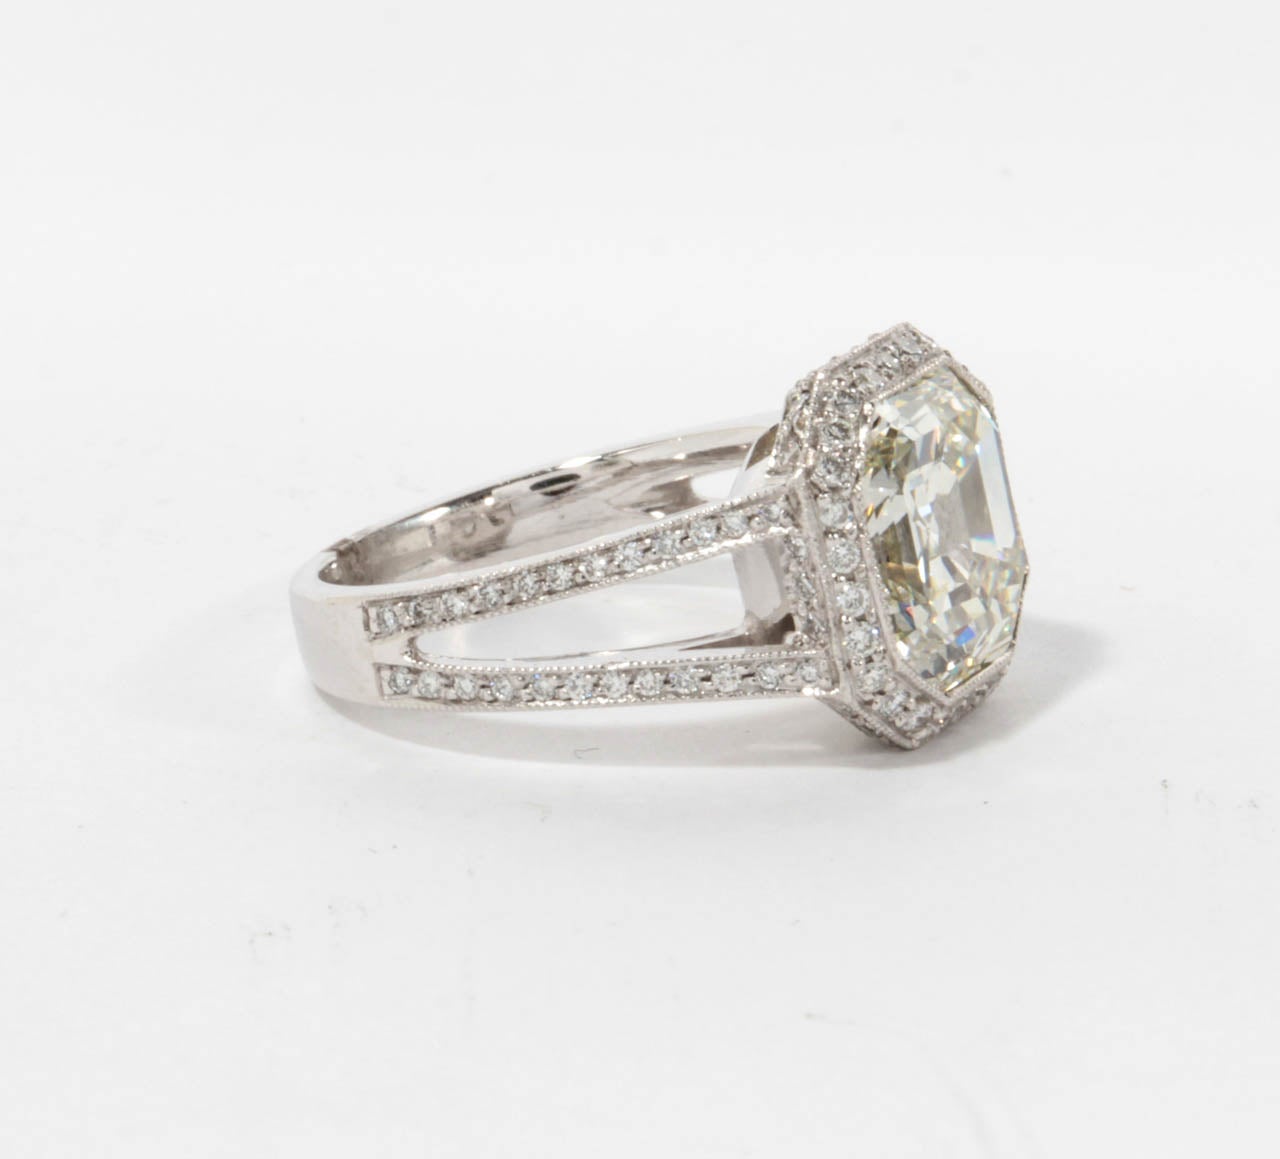 Ein schöner Diamant in der Mitte und ein individuell gestalteter Ring.

5.28 Karat Asscher-Schliff - Farbe H - Reinheit VS2 Zertifizierter zentraler Diamant. 

1.20 Karat runde Diamanten im Brillantschliff, gefasst in einer individuell